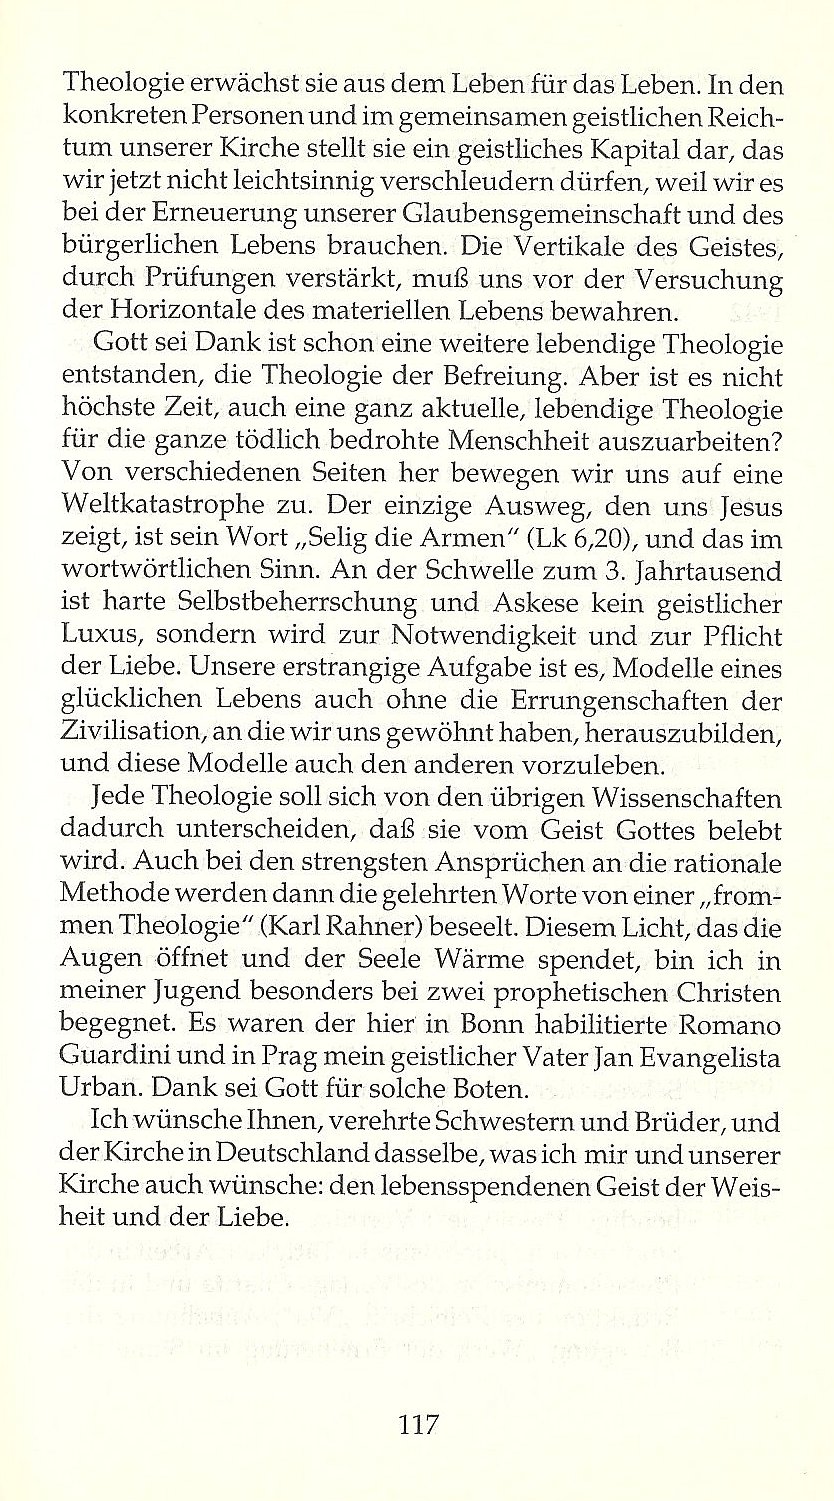 Wie Kirche nicht stirbt / Aus der Rede bei der Verleihung der Theologischen Ehrendoktorwürde in Bonn am 4. 5. 1991 / Seite 117